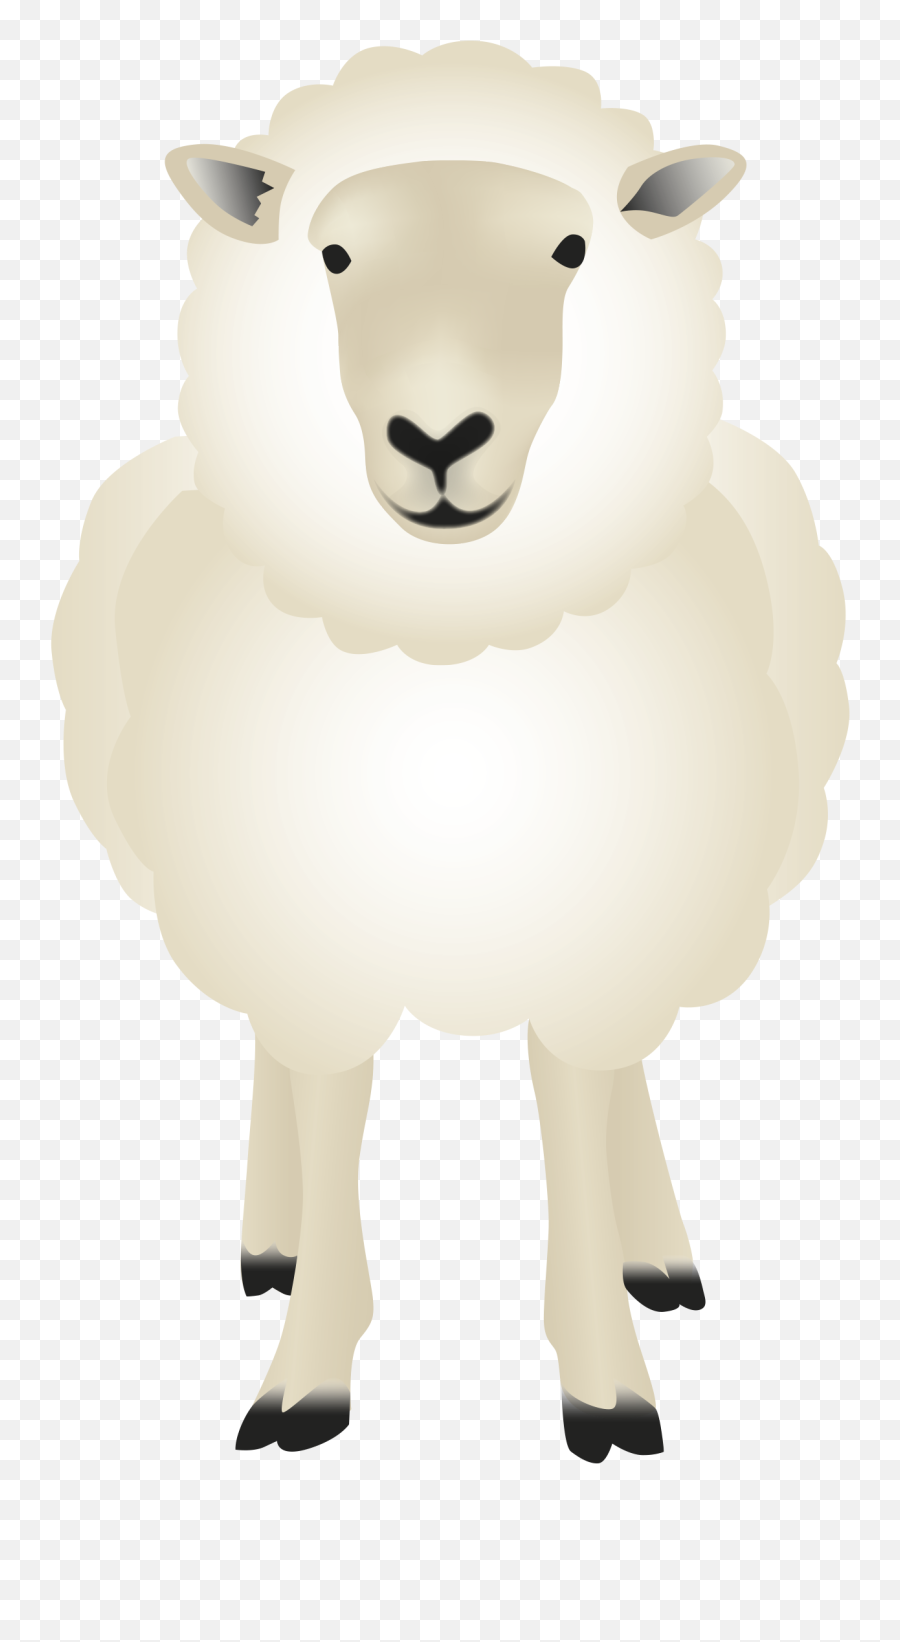 Agr Emojis Final 5 - Sheep,5 Emoji